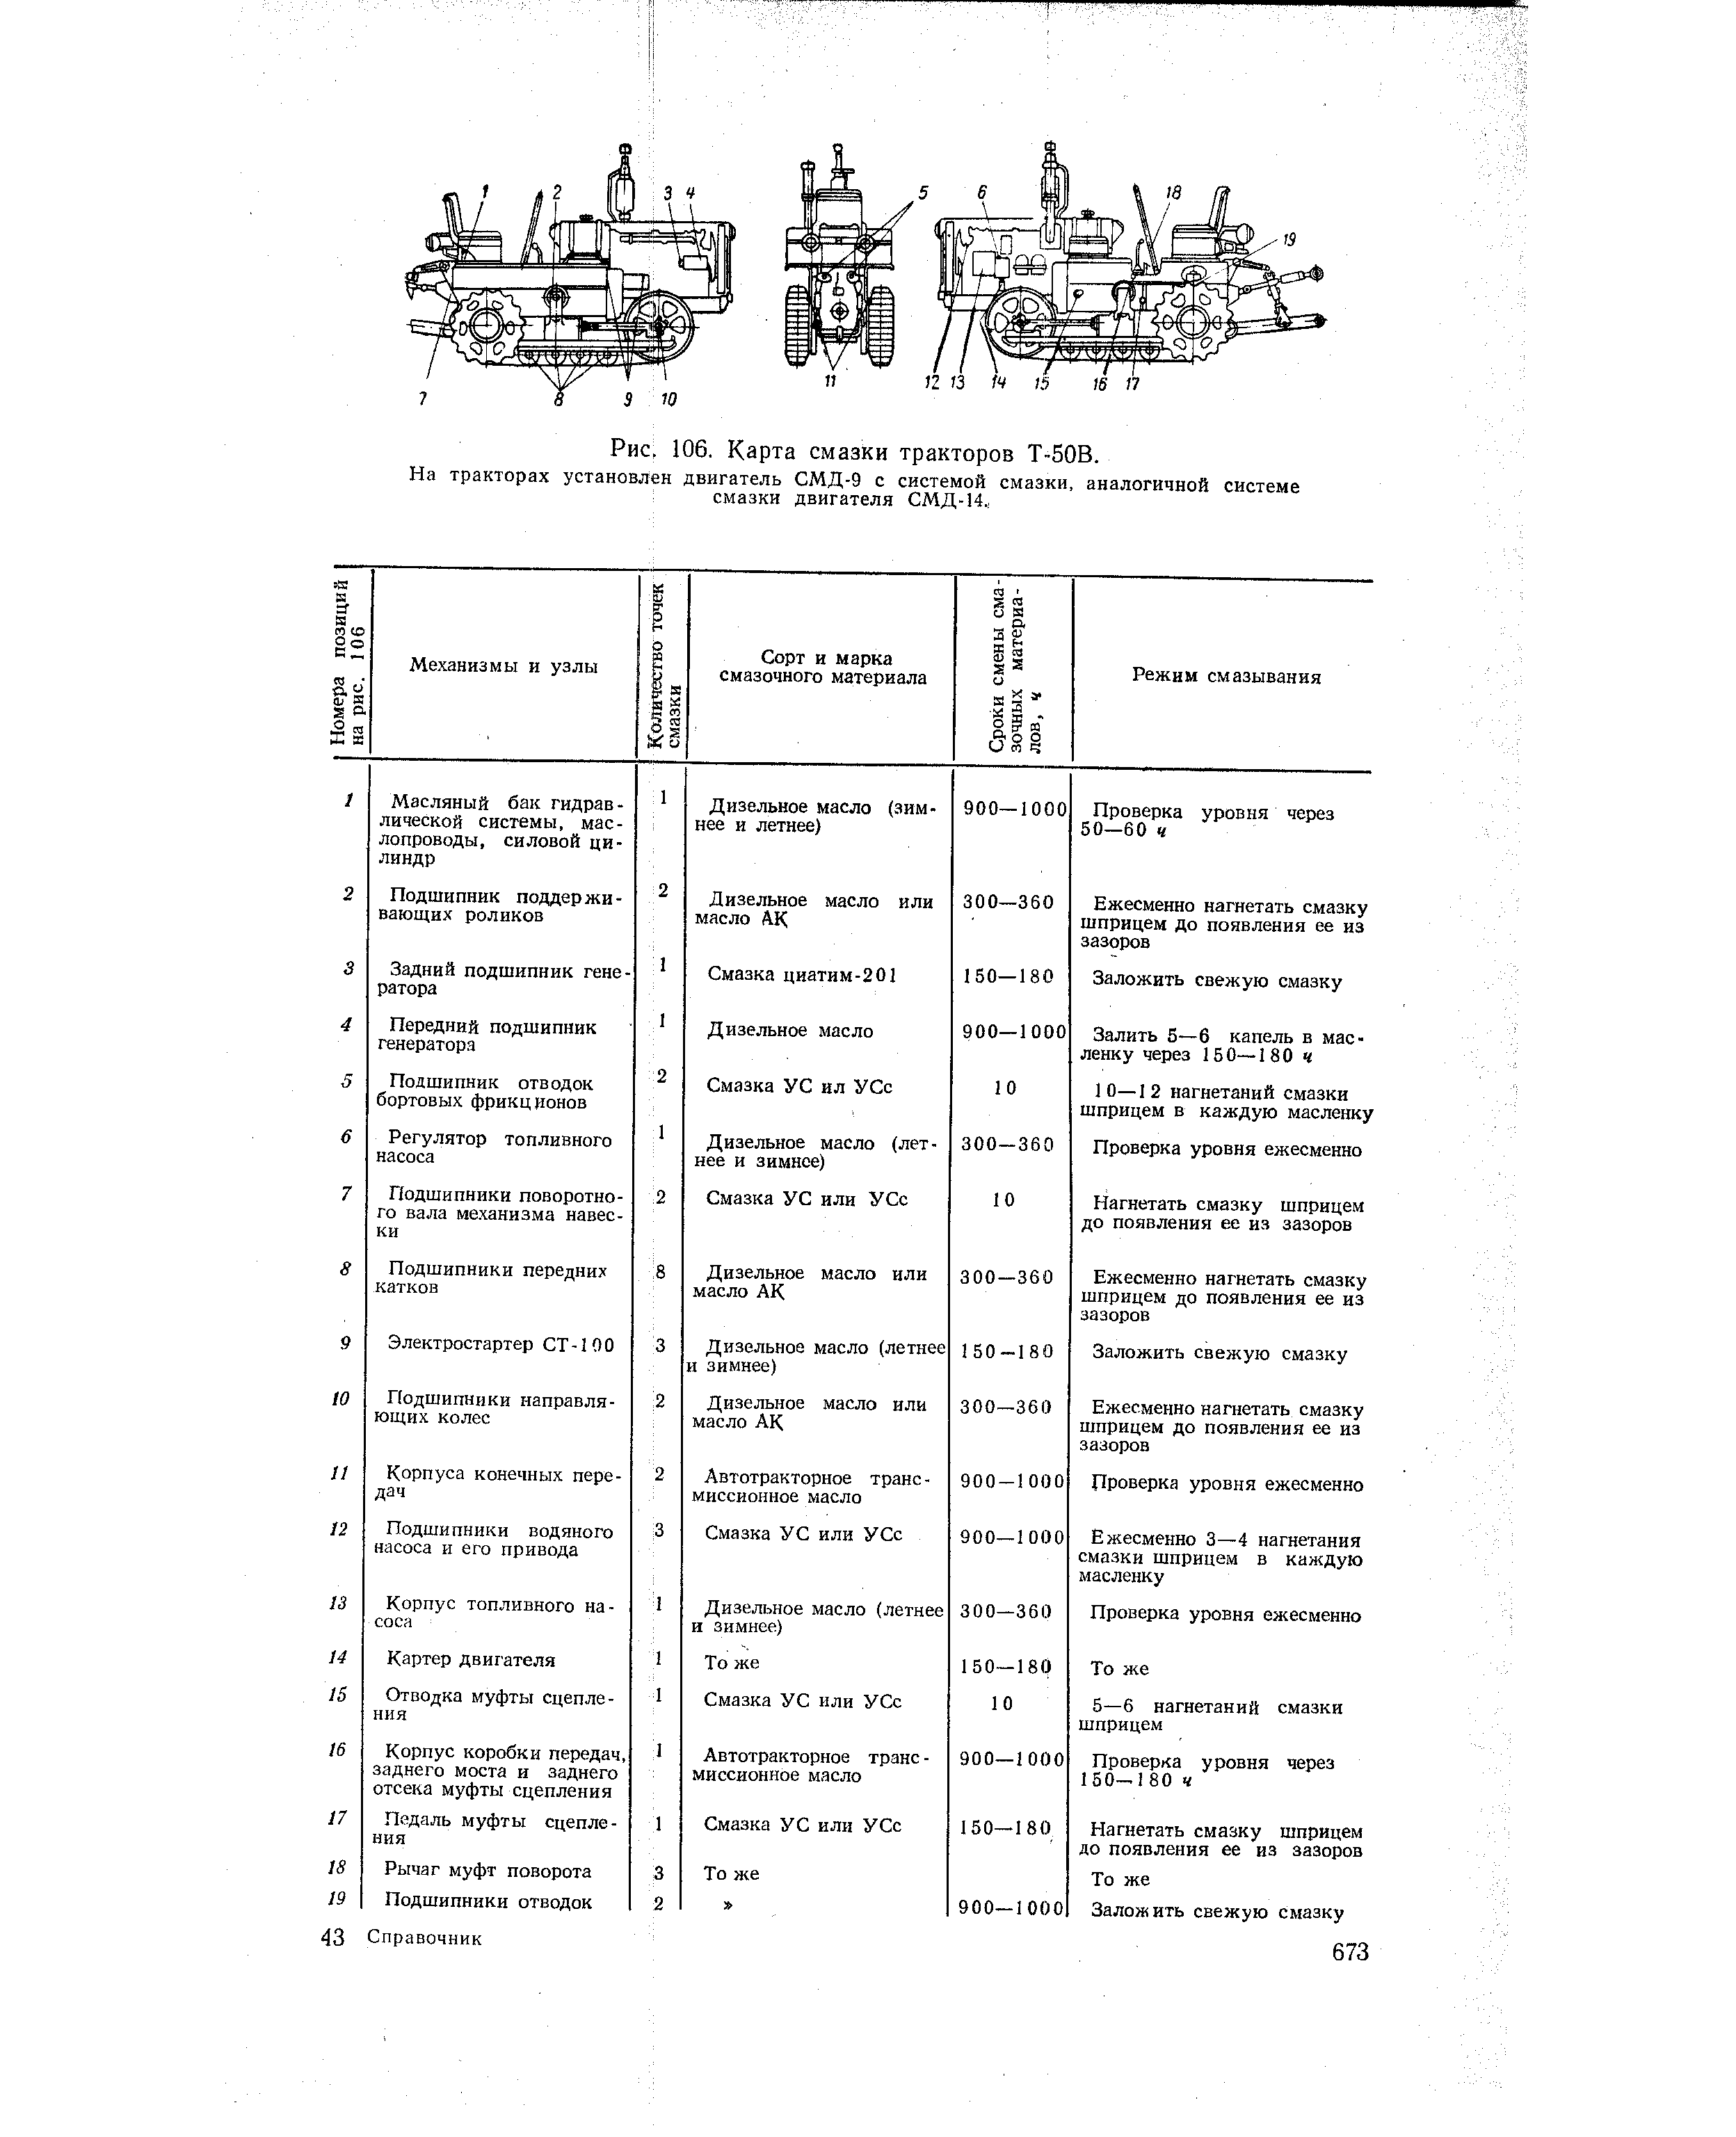 Химмотологическая карта беларус 2103